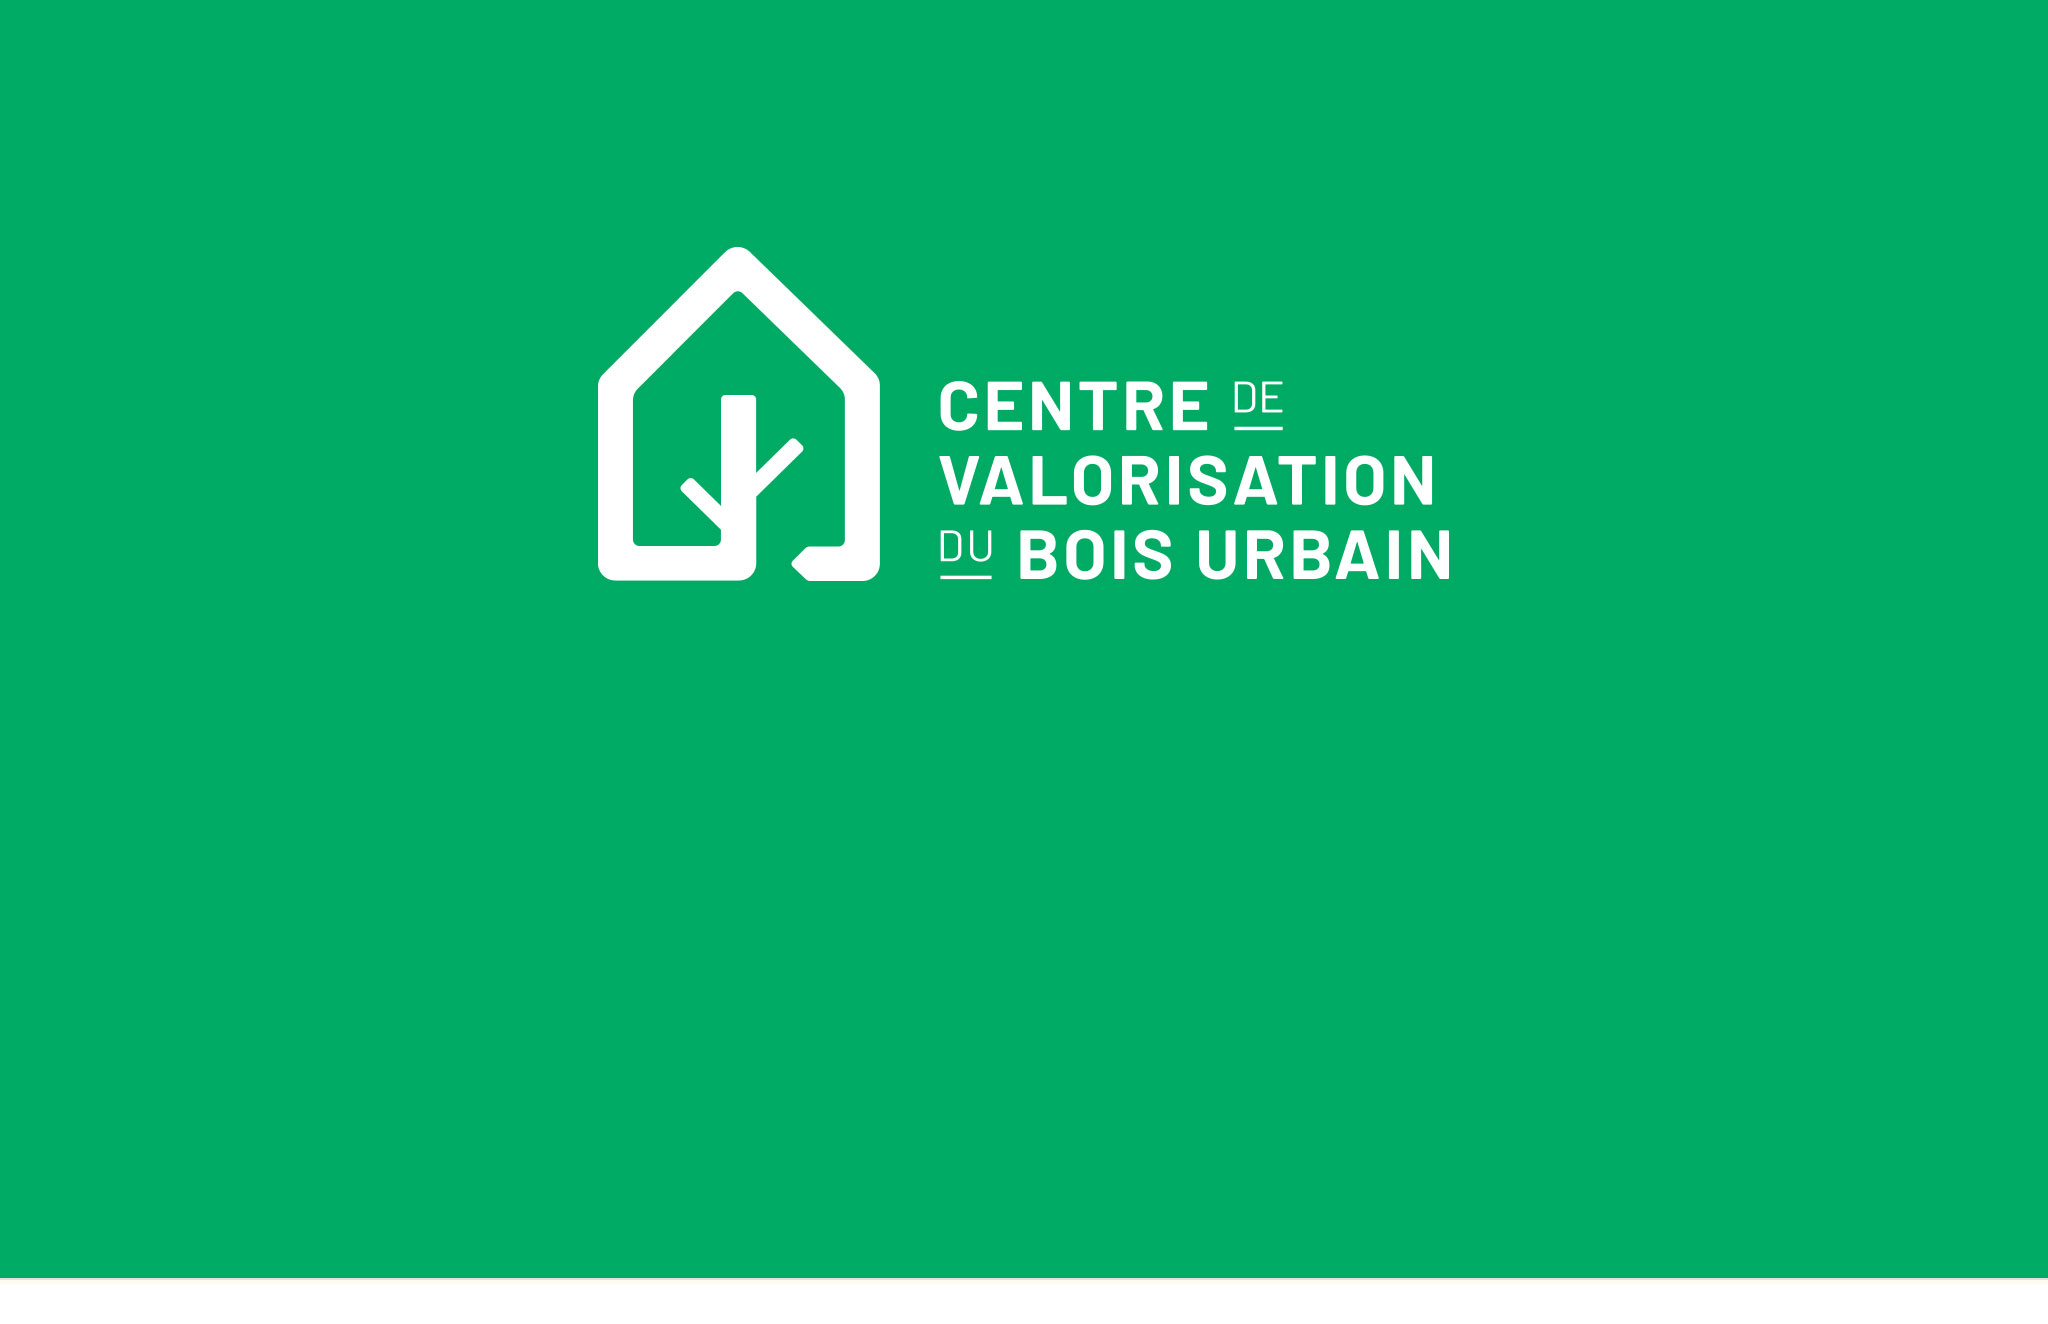 Nouvelle identité visuelle, logo, papeterie, bannière autoportante du Centre de valorisation du bois urbain.